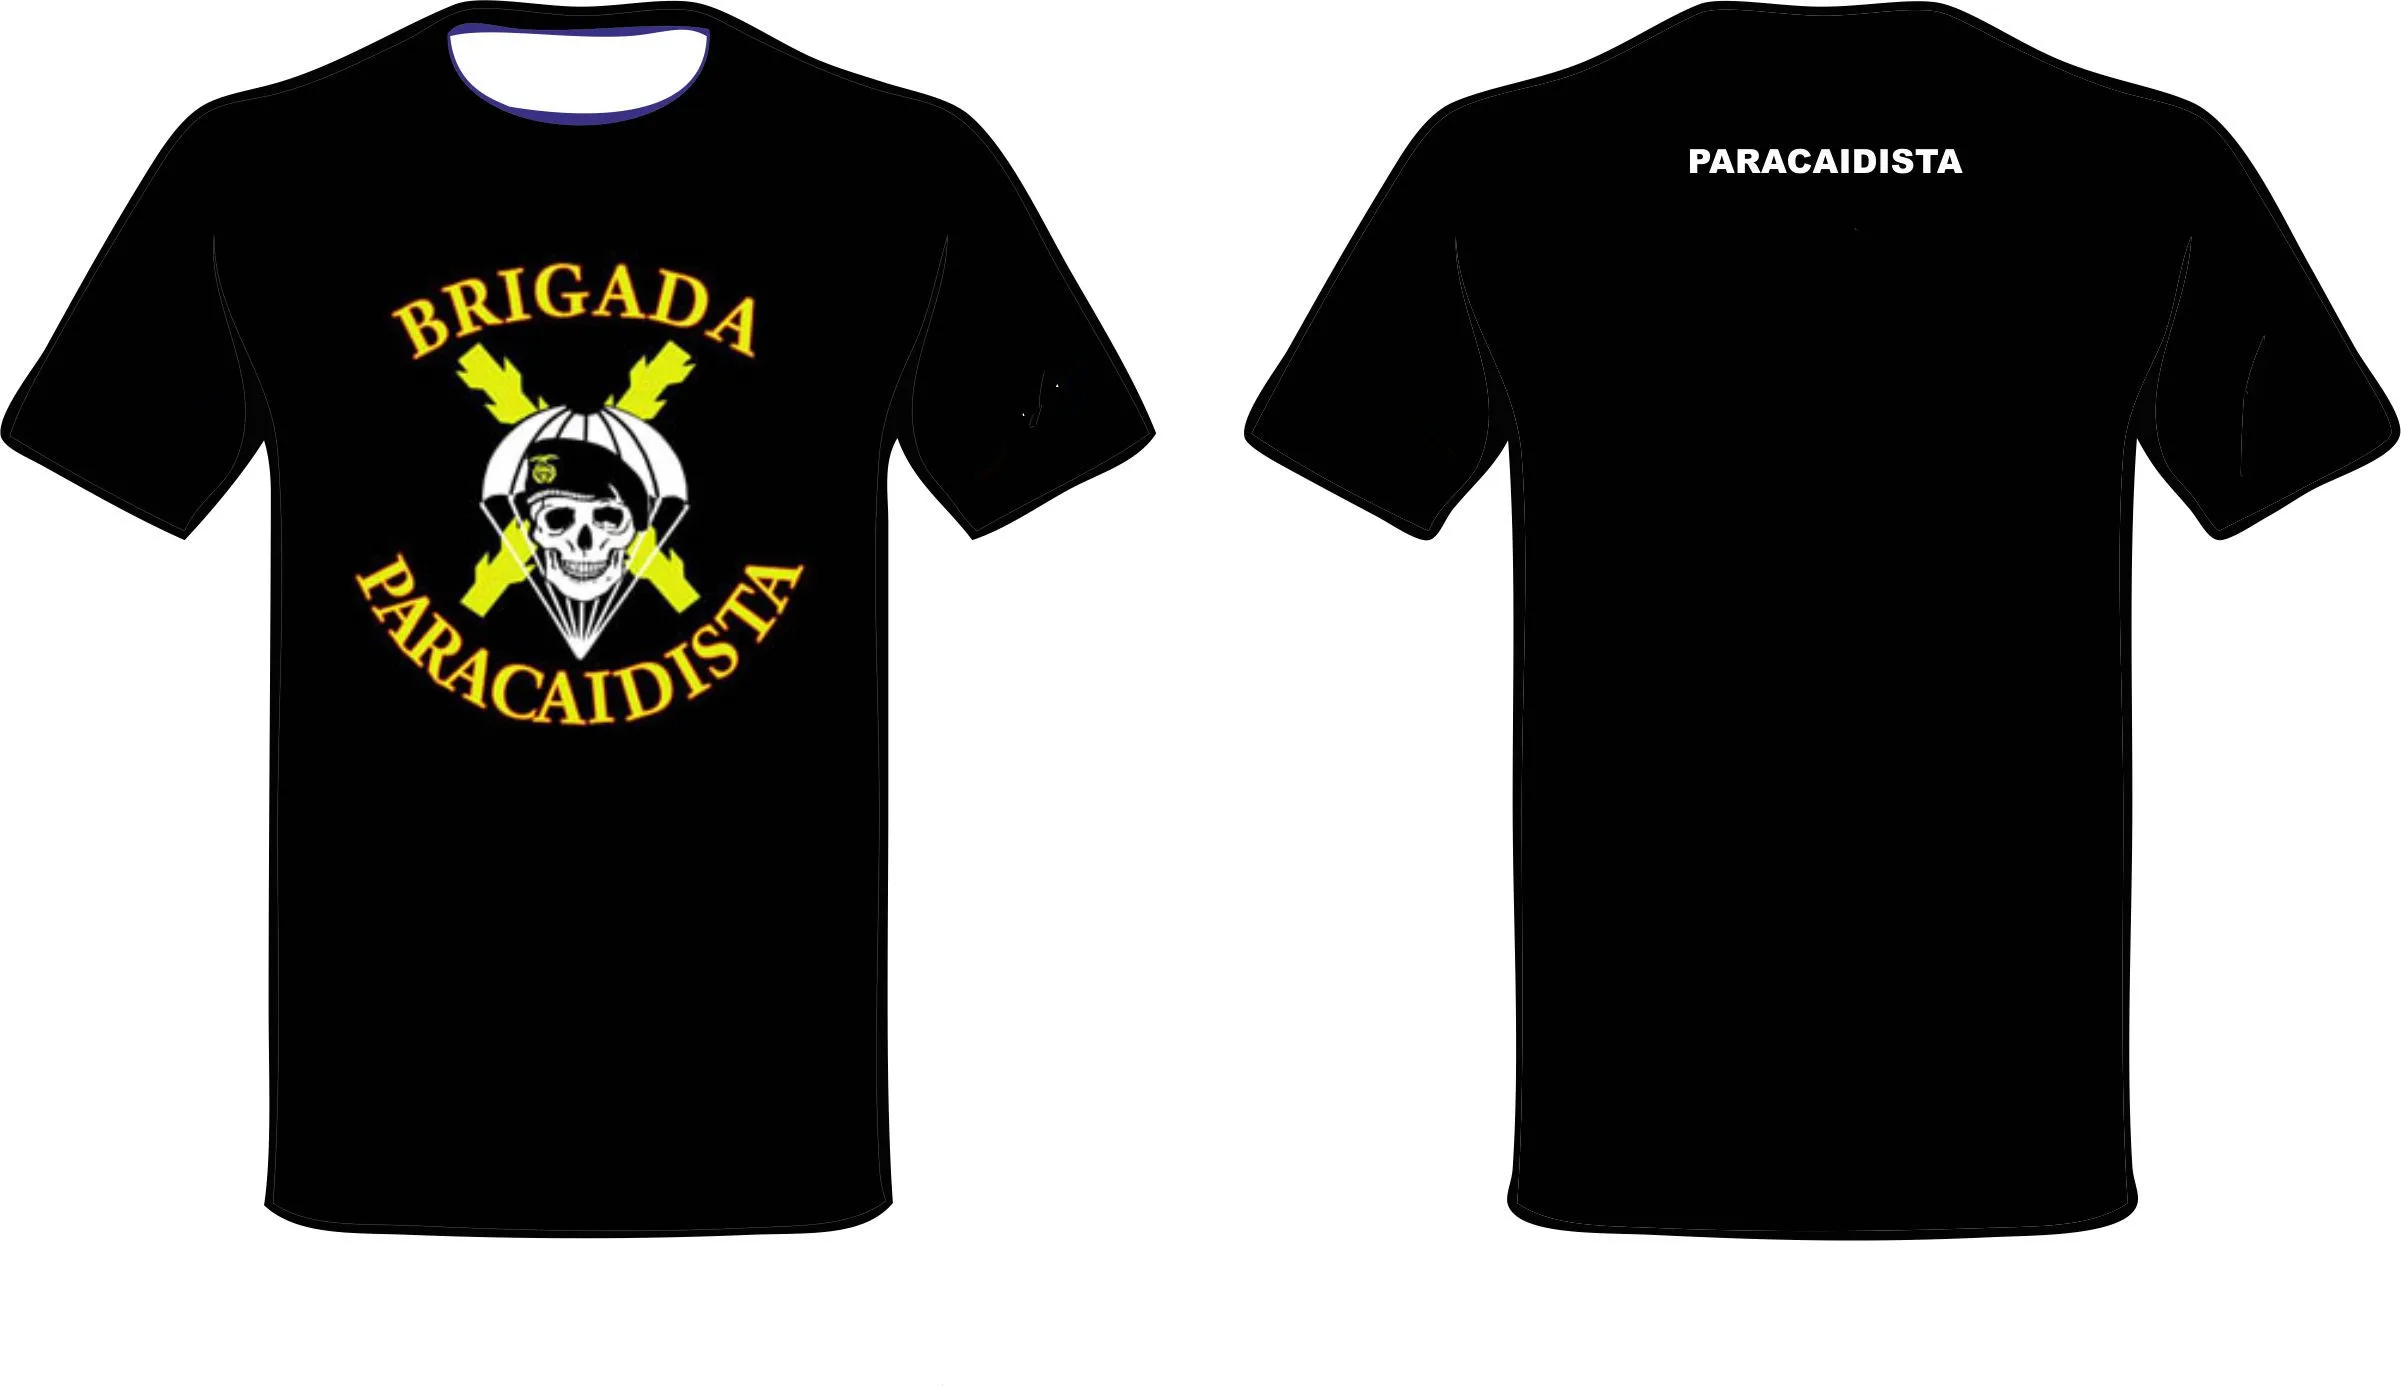 Camiseta Brigada Paracaidista De Tierra para hombre, Camiseta informal De manga corta De algodón con cuello redondo, De verano